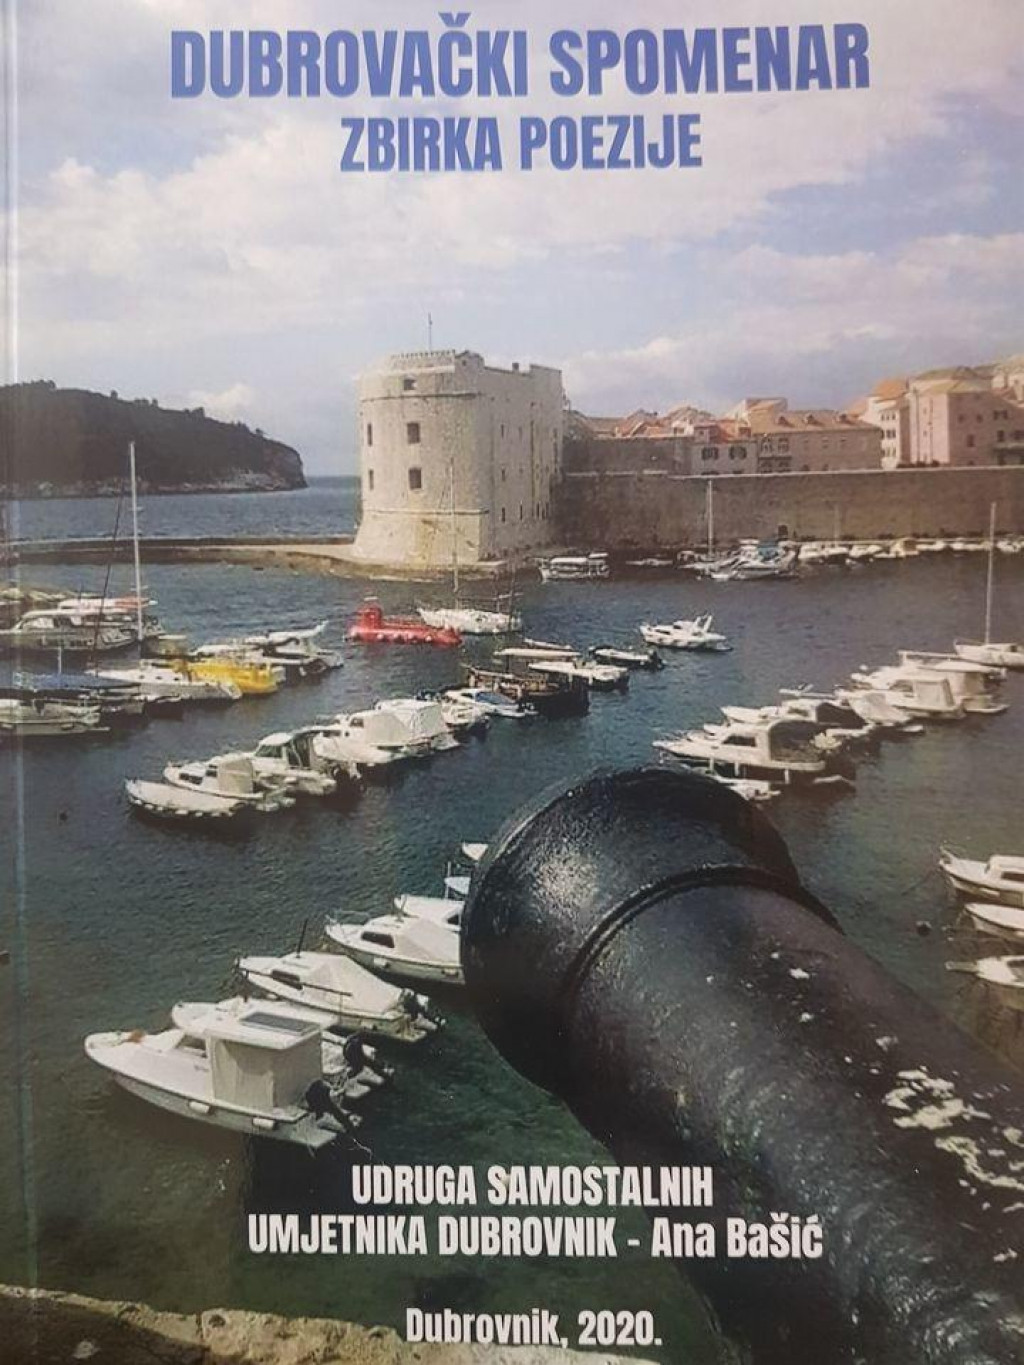 Udruga samostalnih umjetnika Dubrovnik predstavlja zbirku poezije &amp;#39;&amp;#39;Dubrovački spomenar&amp;#39;&amp;#39;